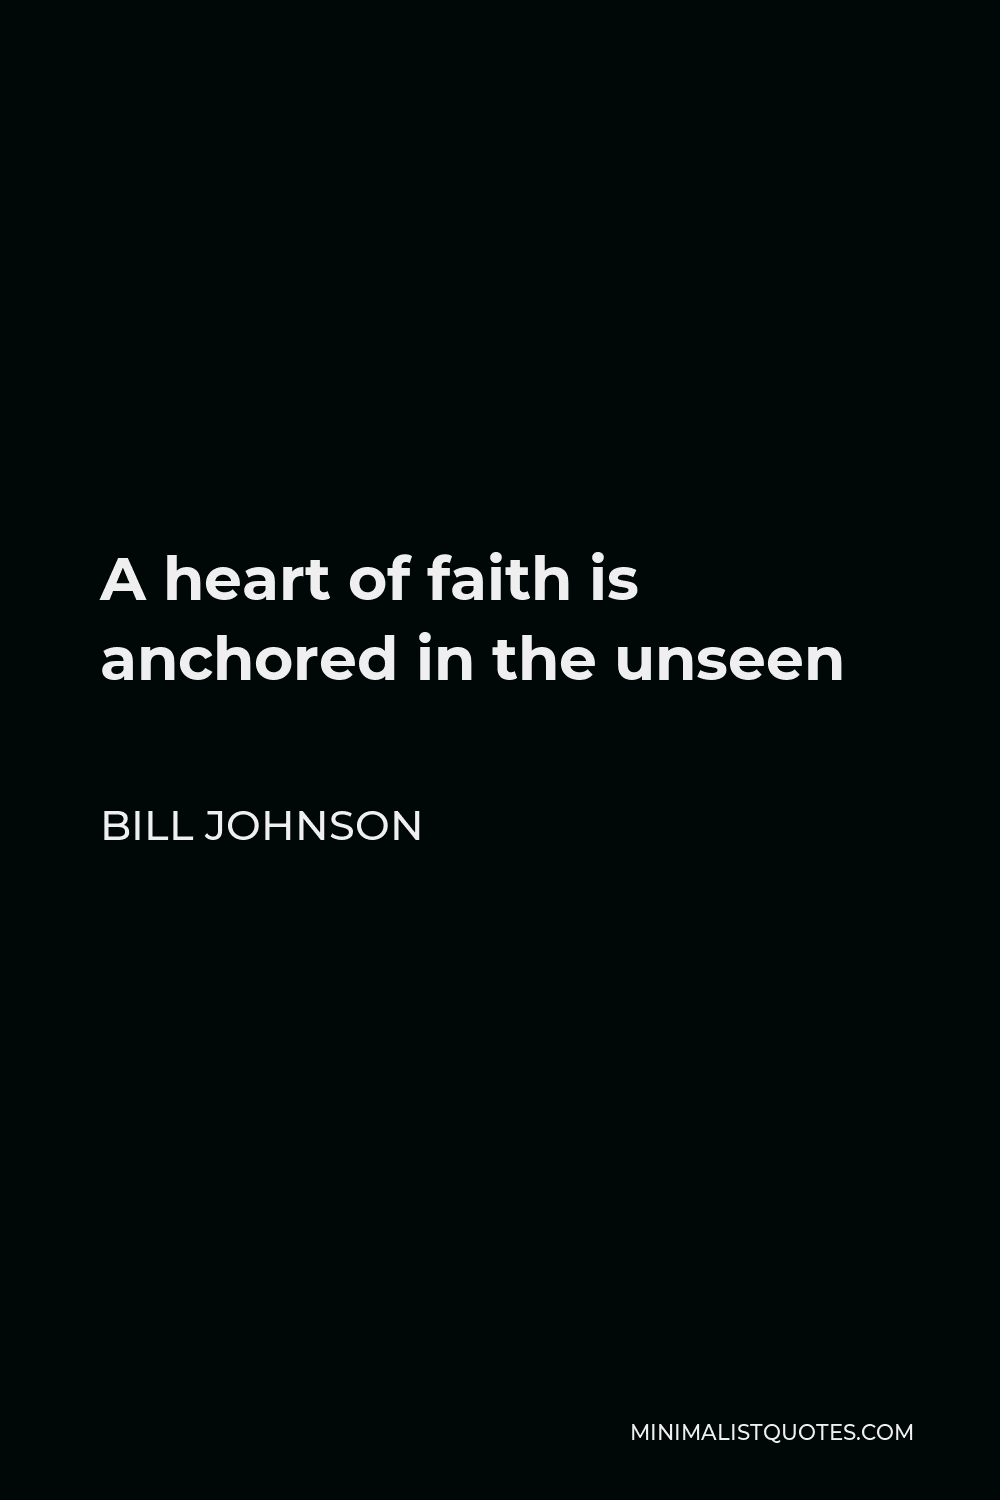 Faith Anchored in the Unseen